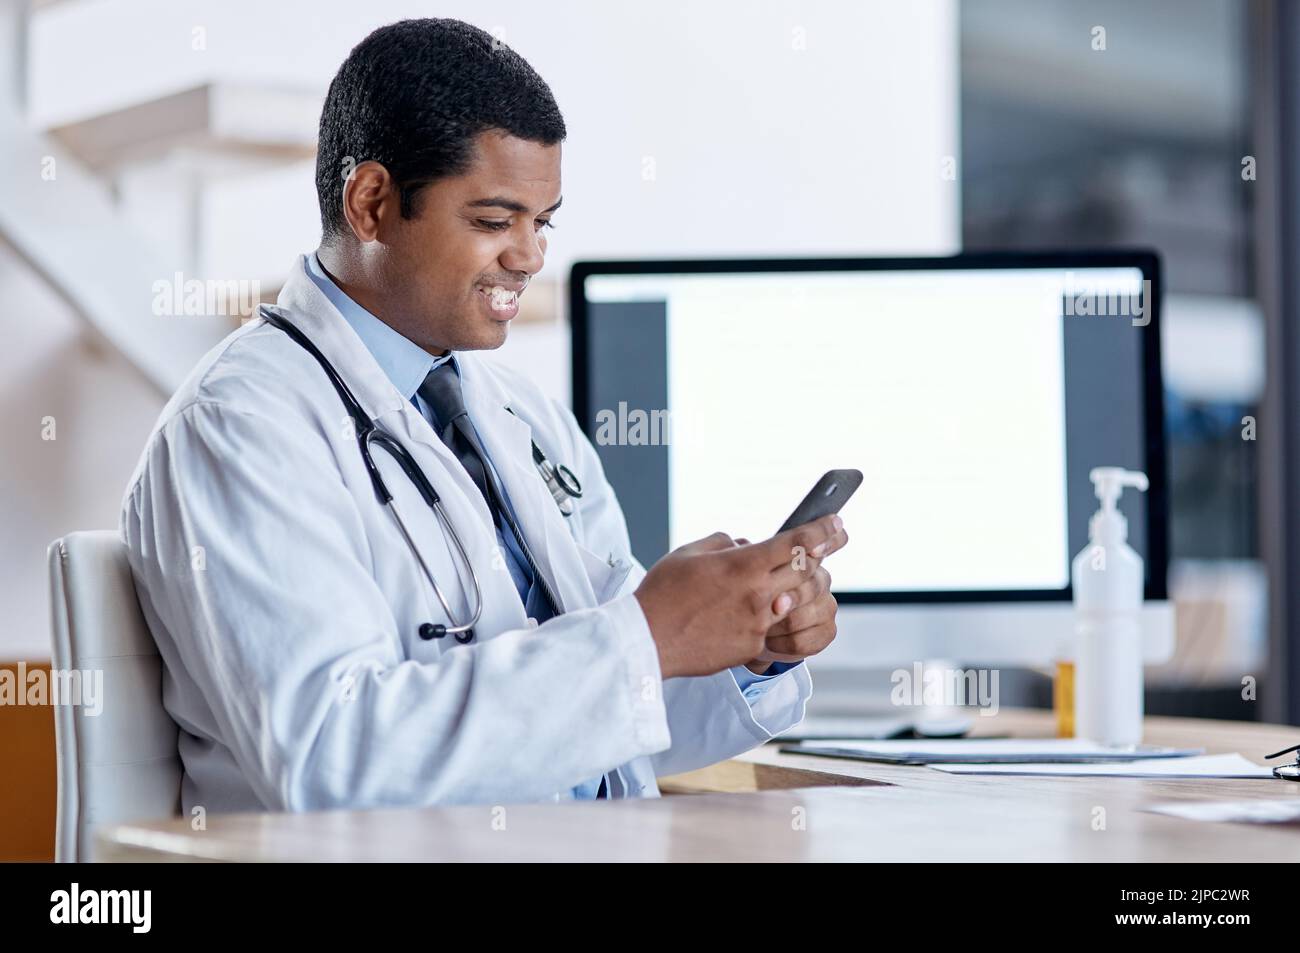 Médecin consultant avec un patient en ligne sur appel vidéo par téléphone, faisant de la télémédecine et de l'écoute pendant un rendez-vous médical. Heureux, souriant Banque D'Images